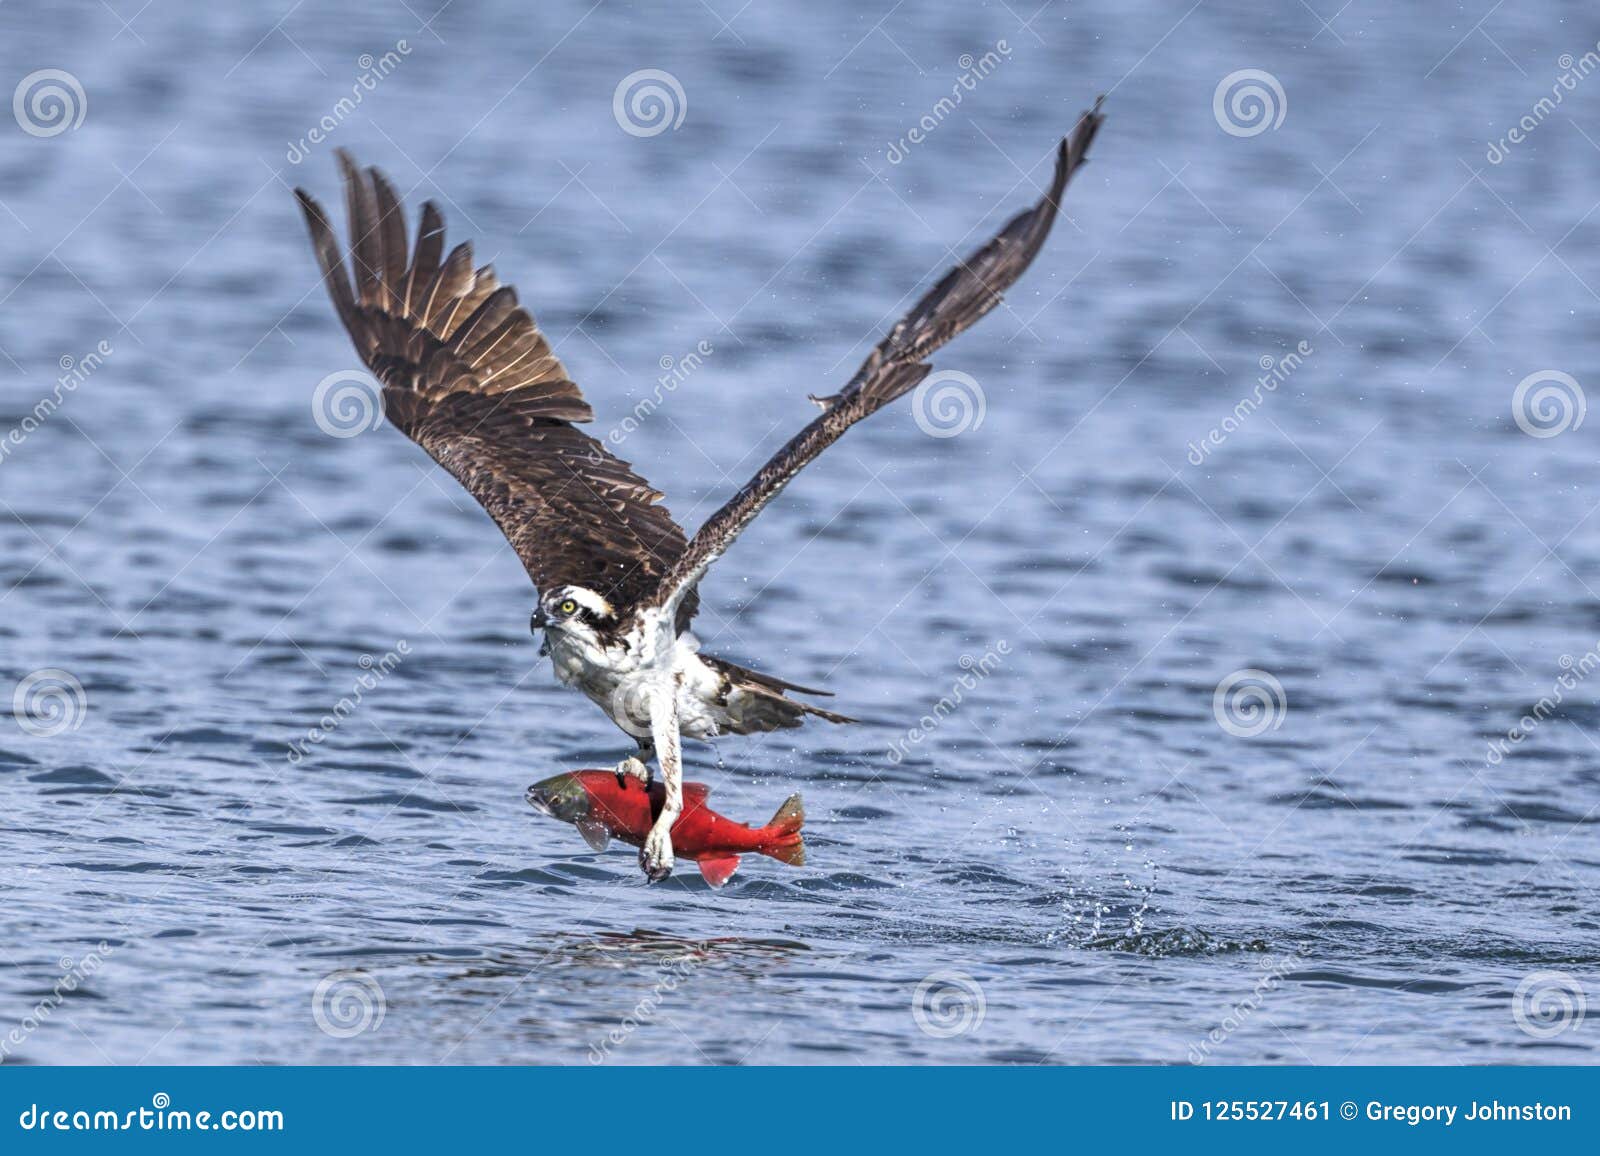 osprey flies off with catch.